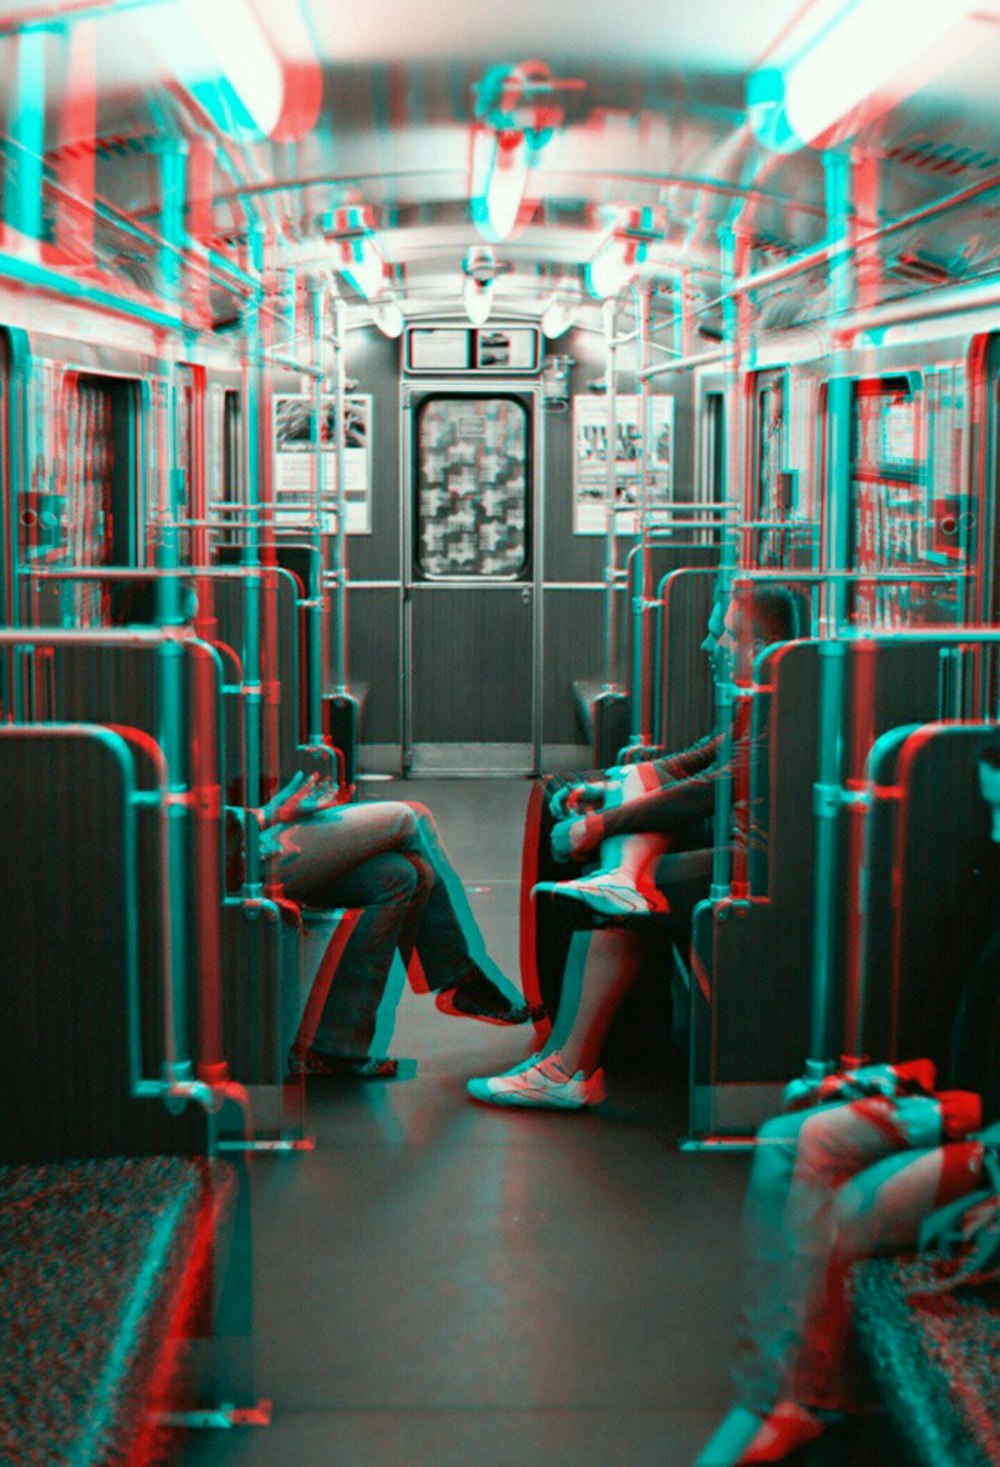 電車の中に座っているときに向かい合っている2人のグレースケール写真